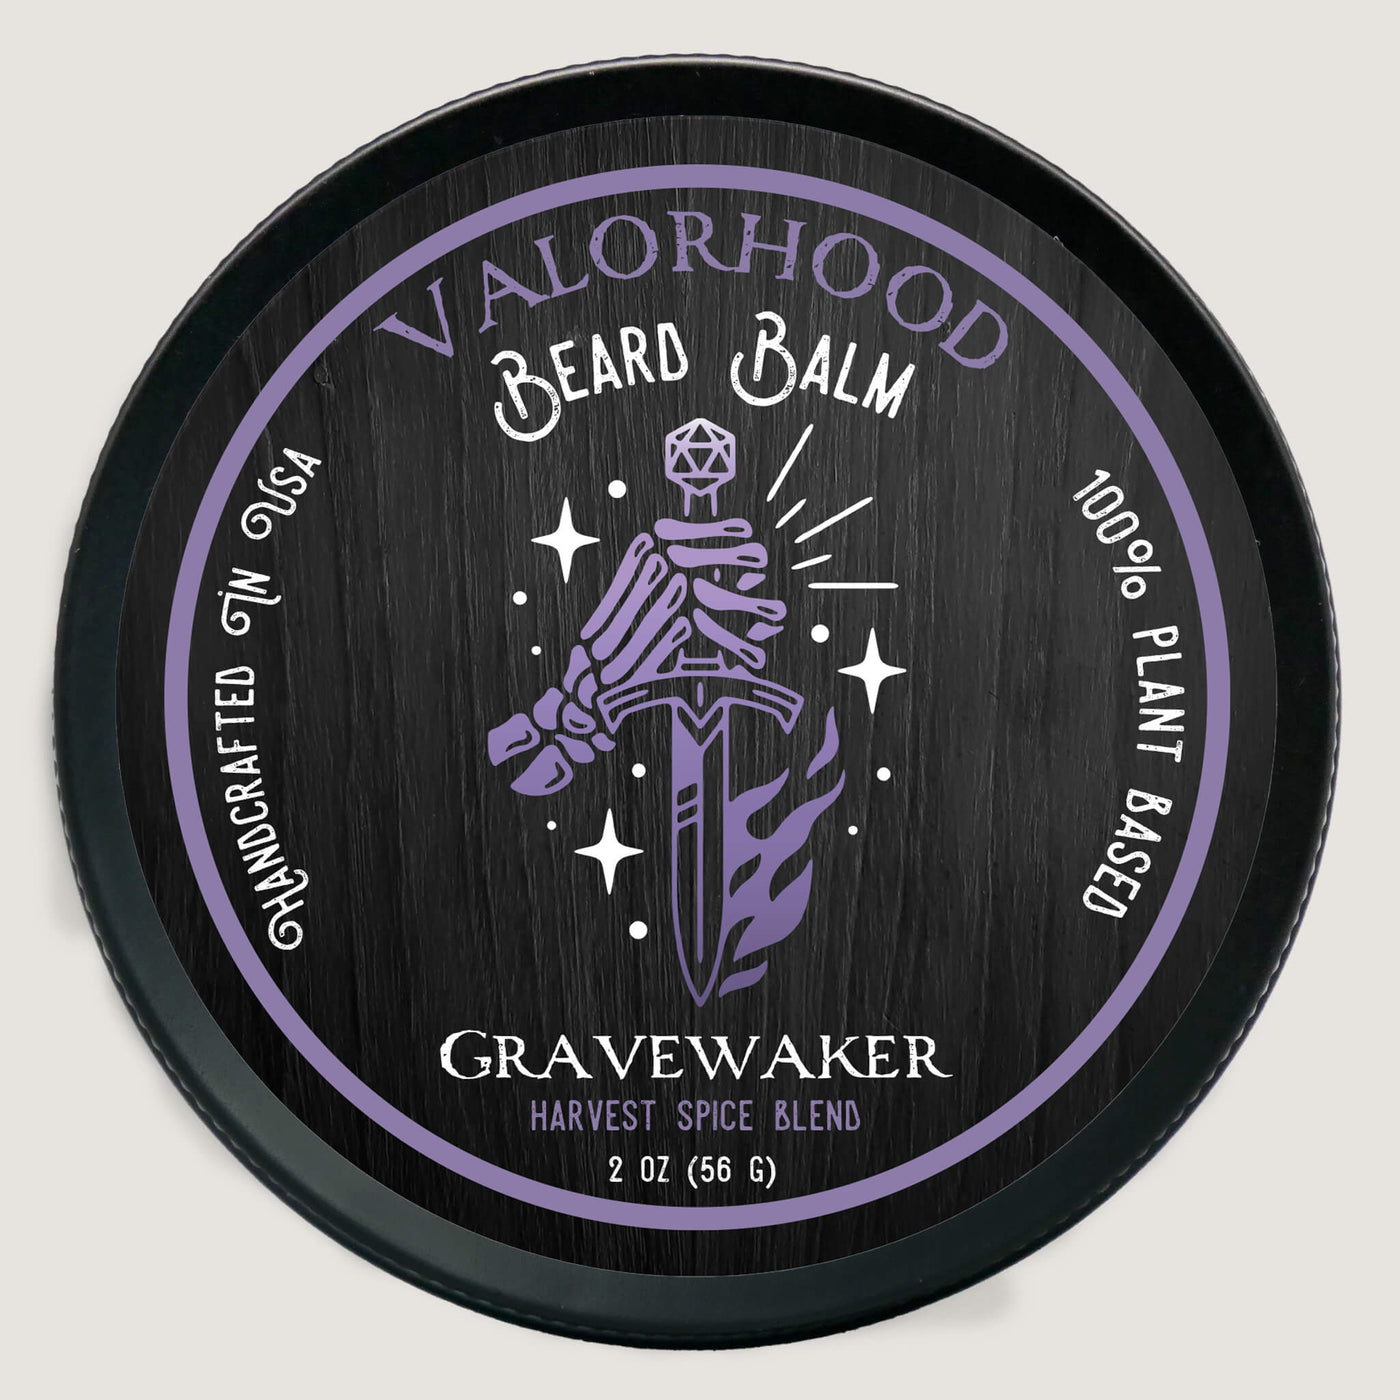 Gravewaker Beard Balm